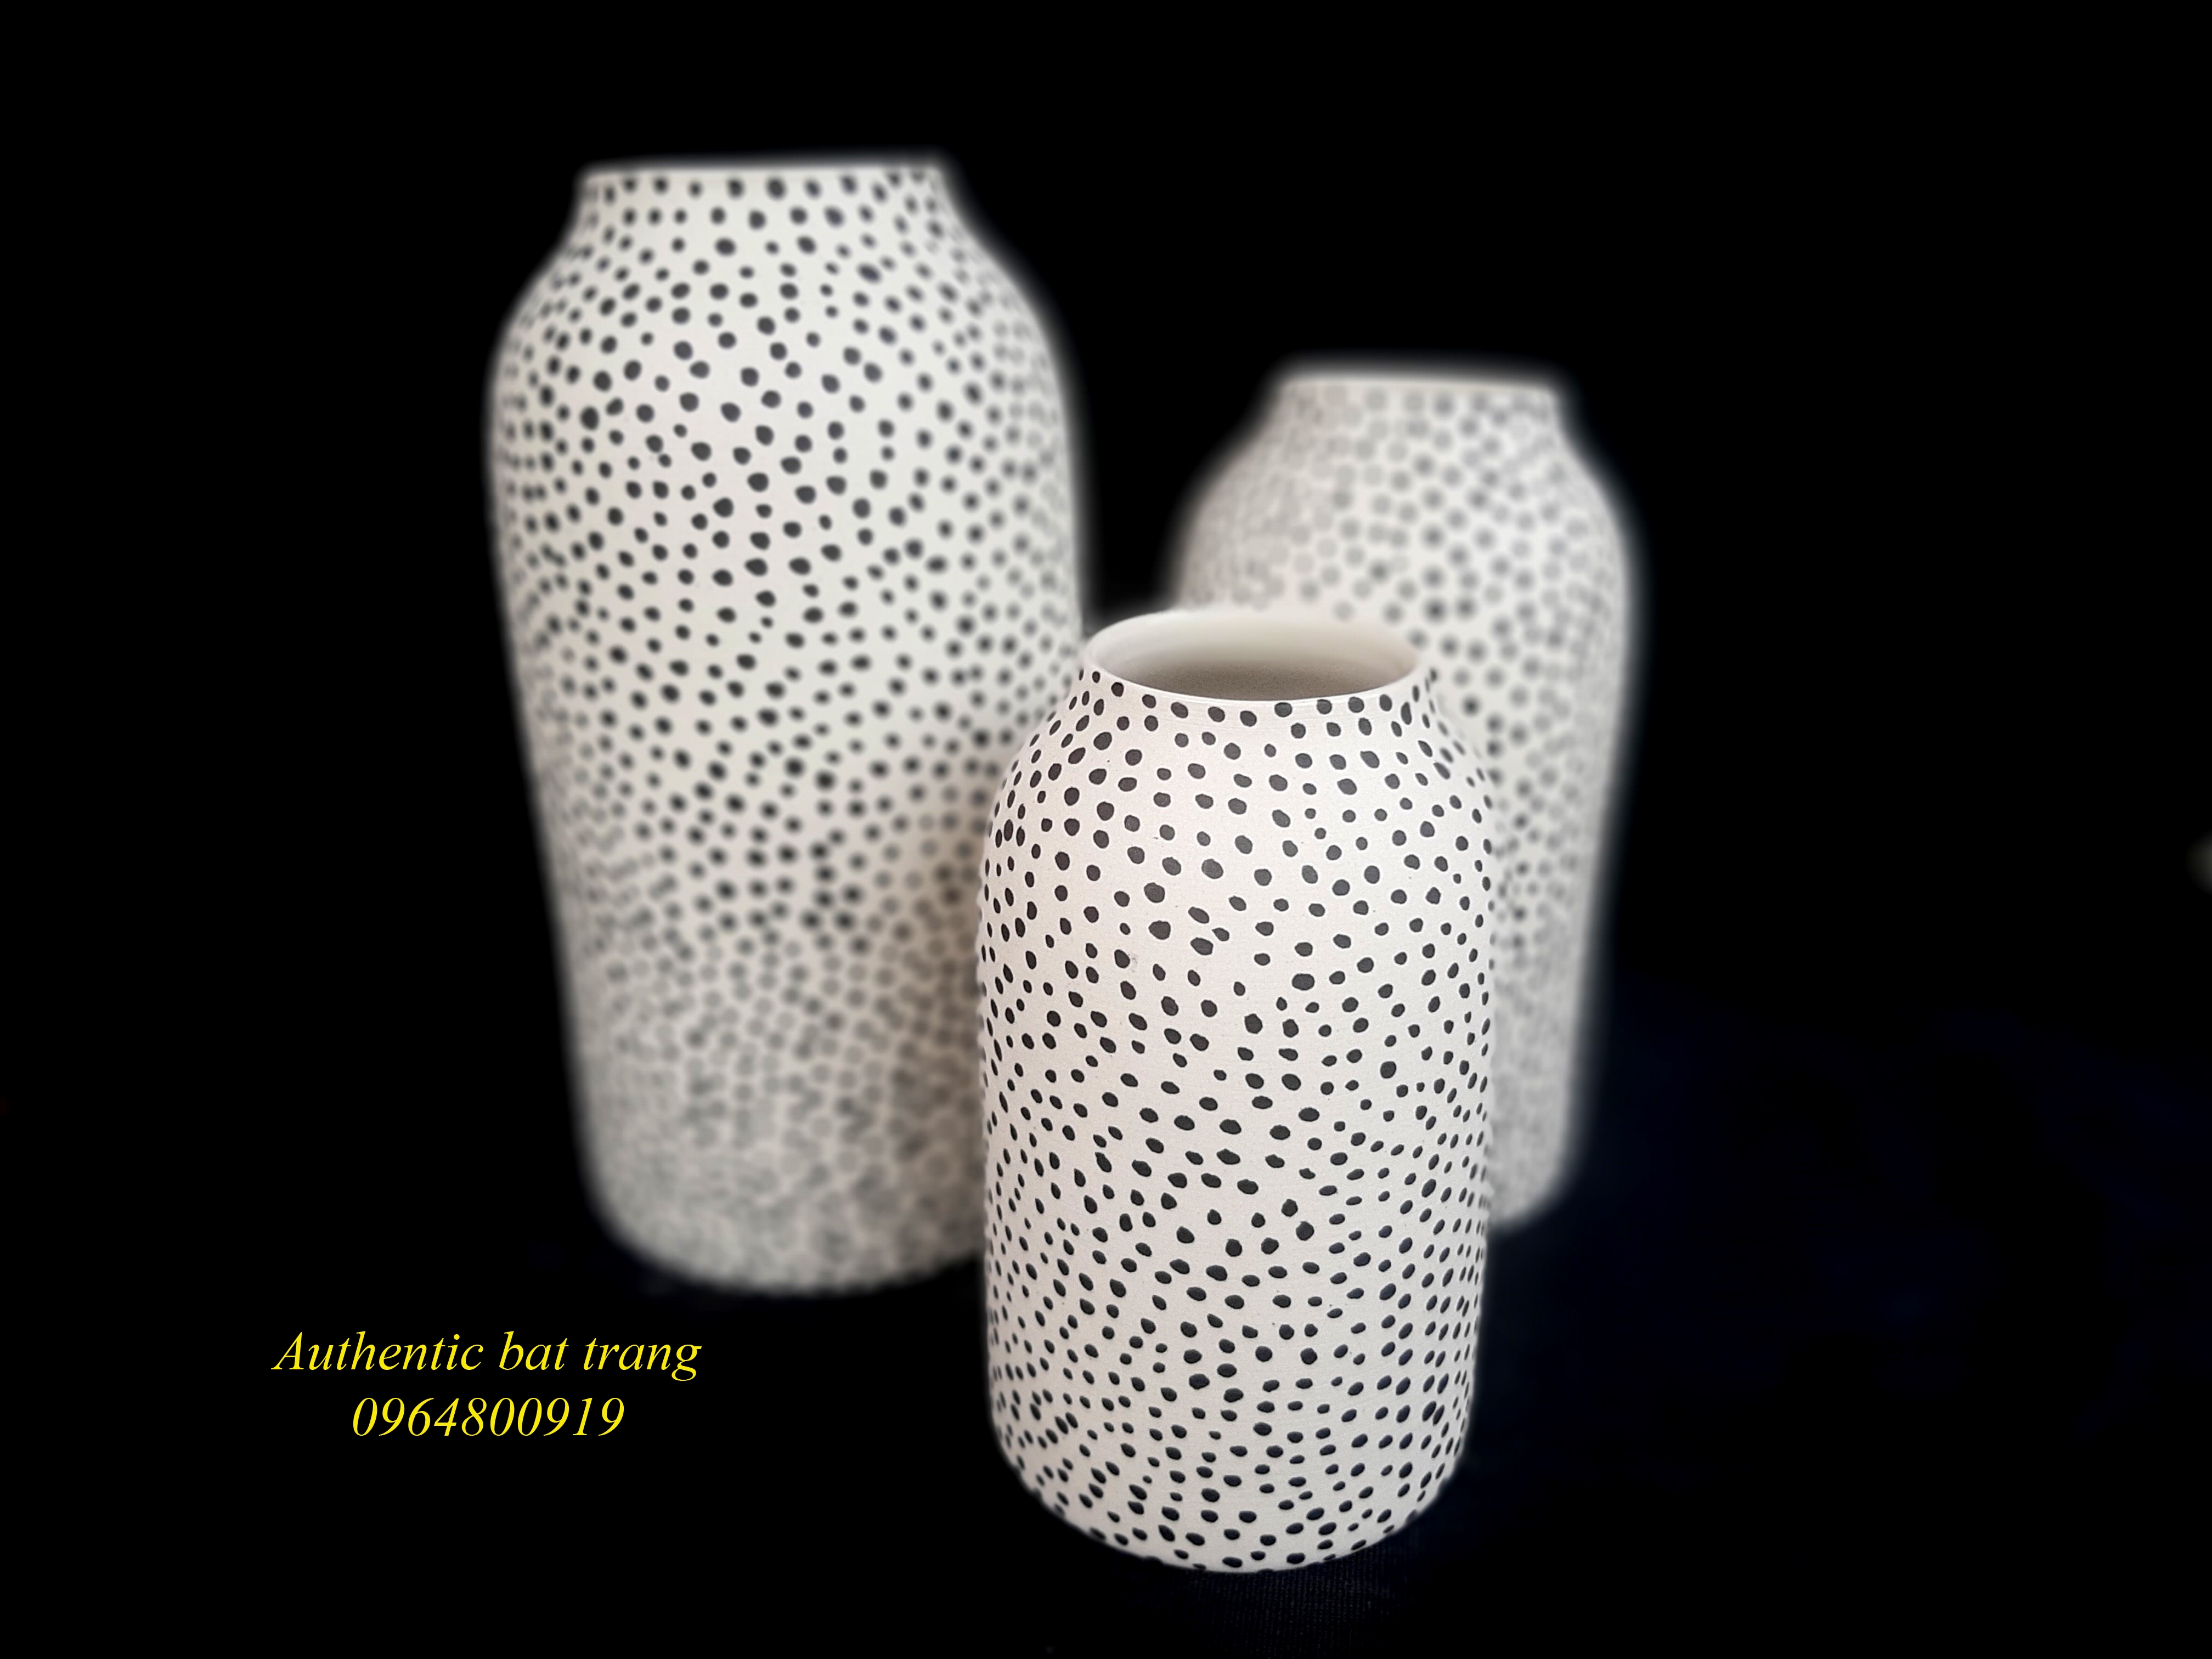 Home decor dots vases/ Bộ bình  trụ chấm bi, trang trí nhà cửa sản phẩm vẽ tay thủ công tai xưởng gốm sứ Authentic bat trang